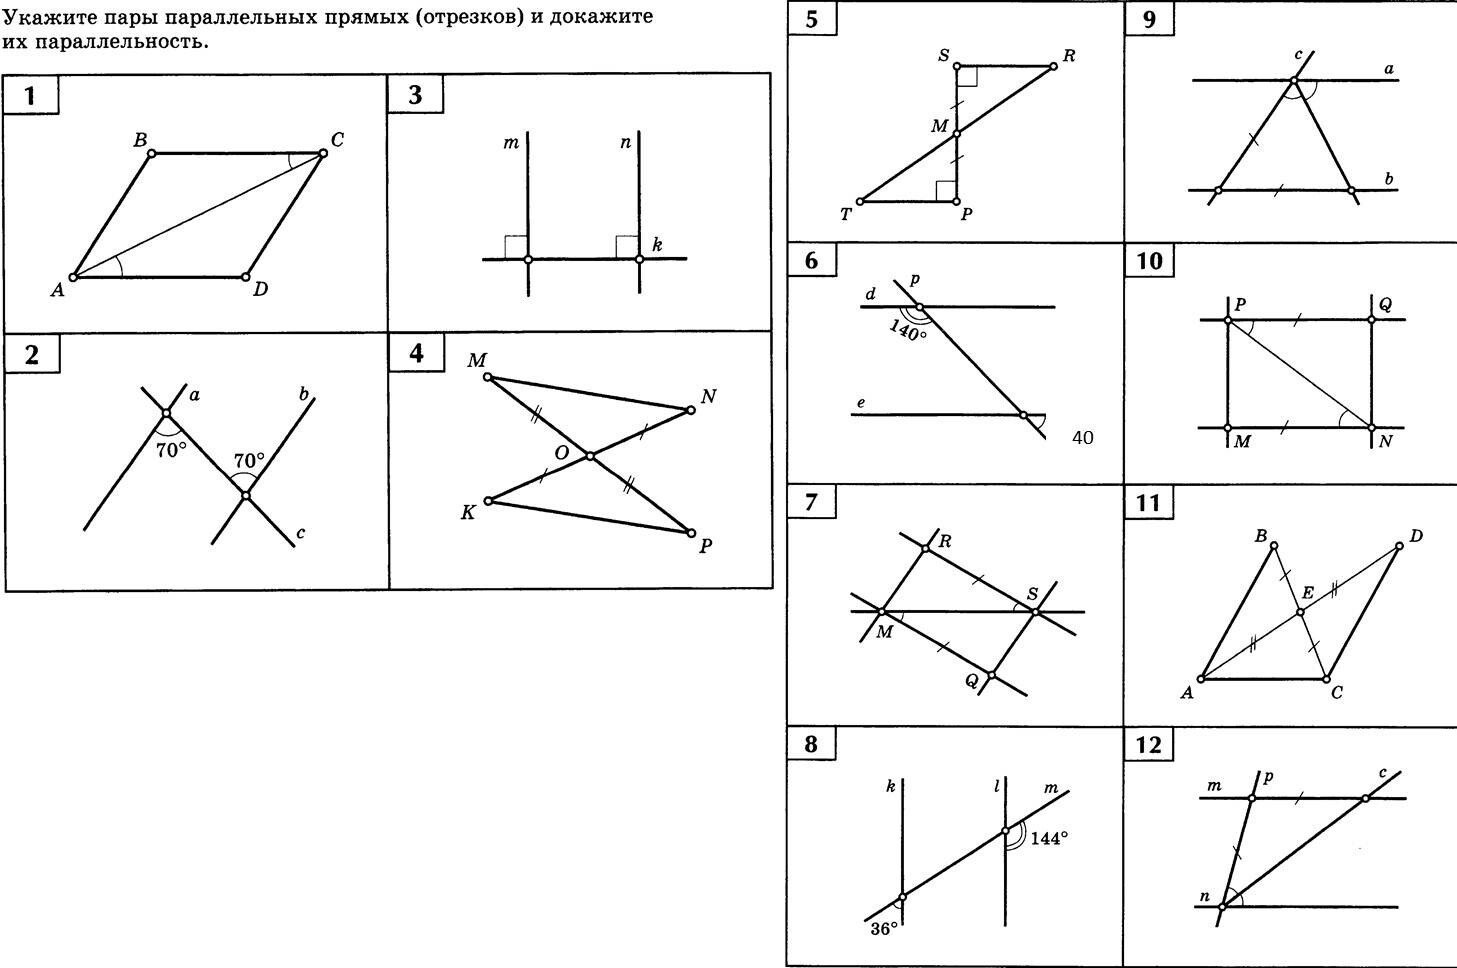 Задачи на чертежах 7 классы. Укажите пары параллельных прямых и отрезков. Укажите пары параллельных прямых и докажите их. Укажите пары параллельных прямых отрезков и докажите. Укажите пара паралельных отресков.